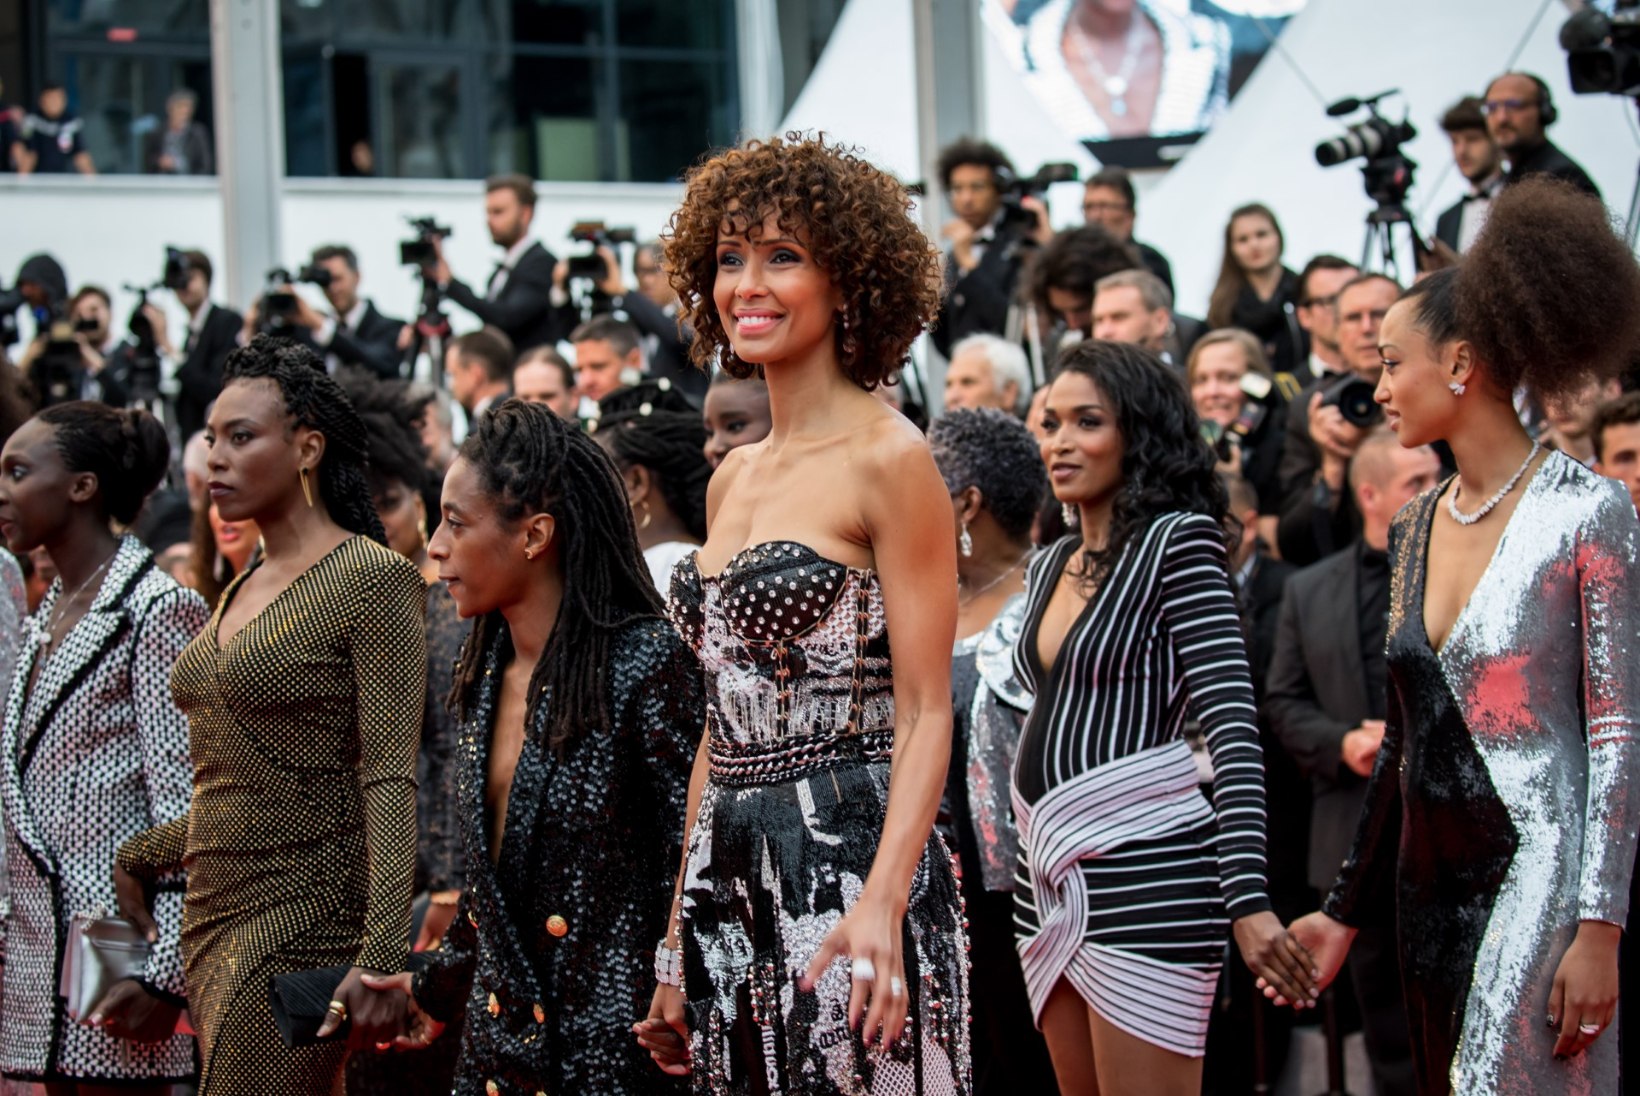 FOTOD | Mustanahalised näitlejannad protestisid Cannes'is rassismi vastu